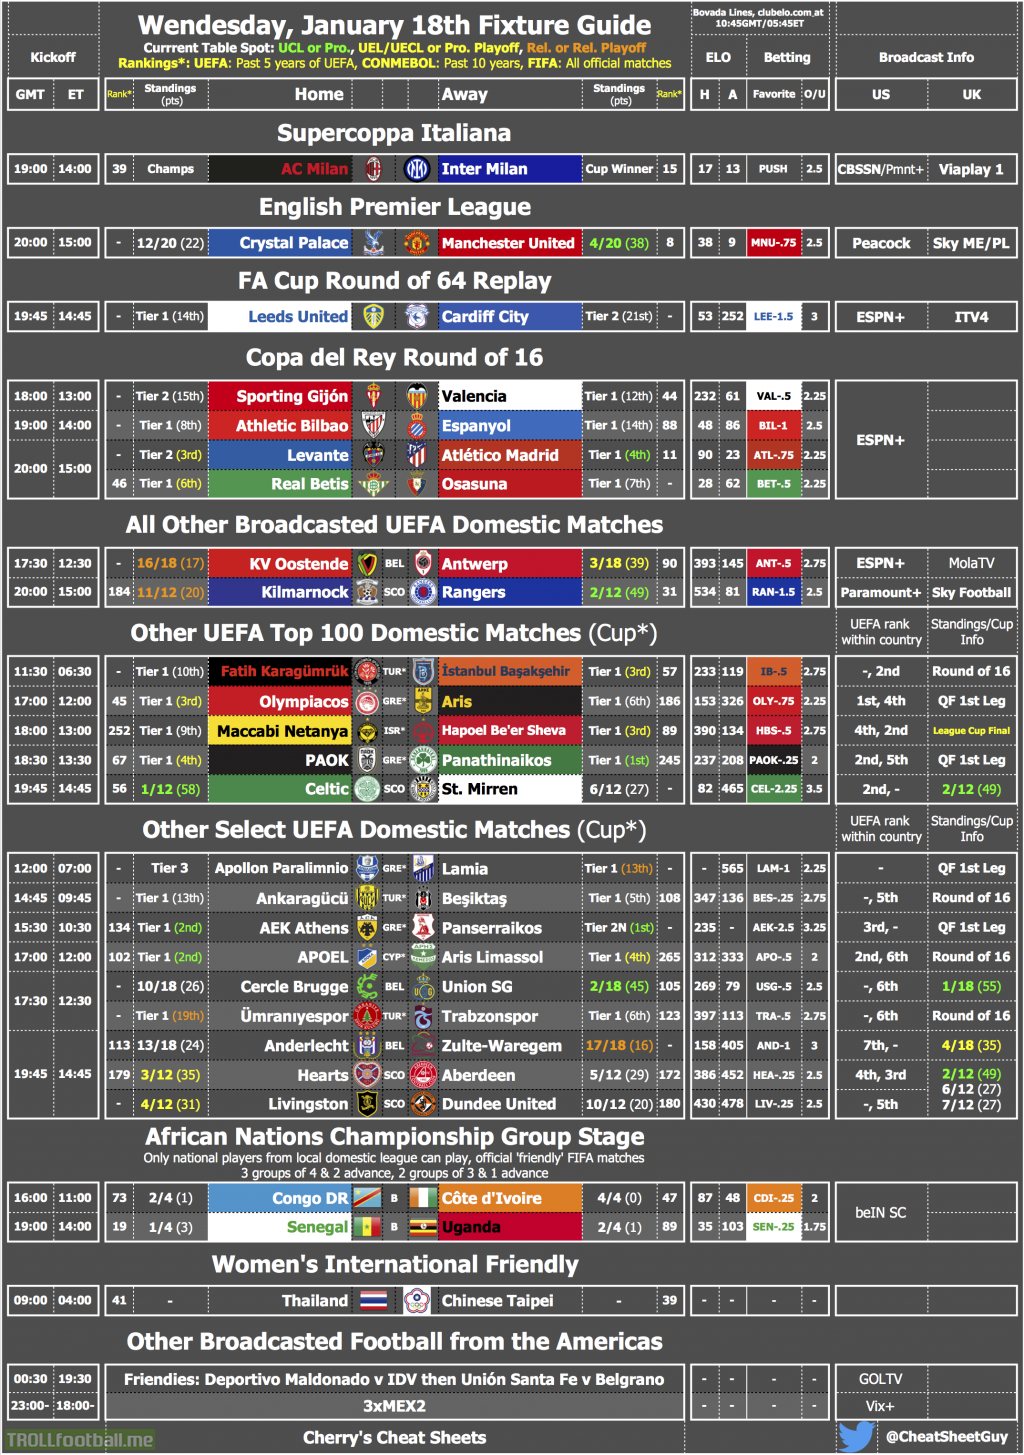 Wednesday's Fixture & TV Cheat Sheet [OC]